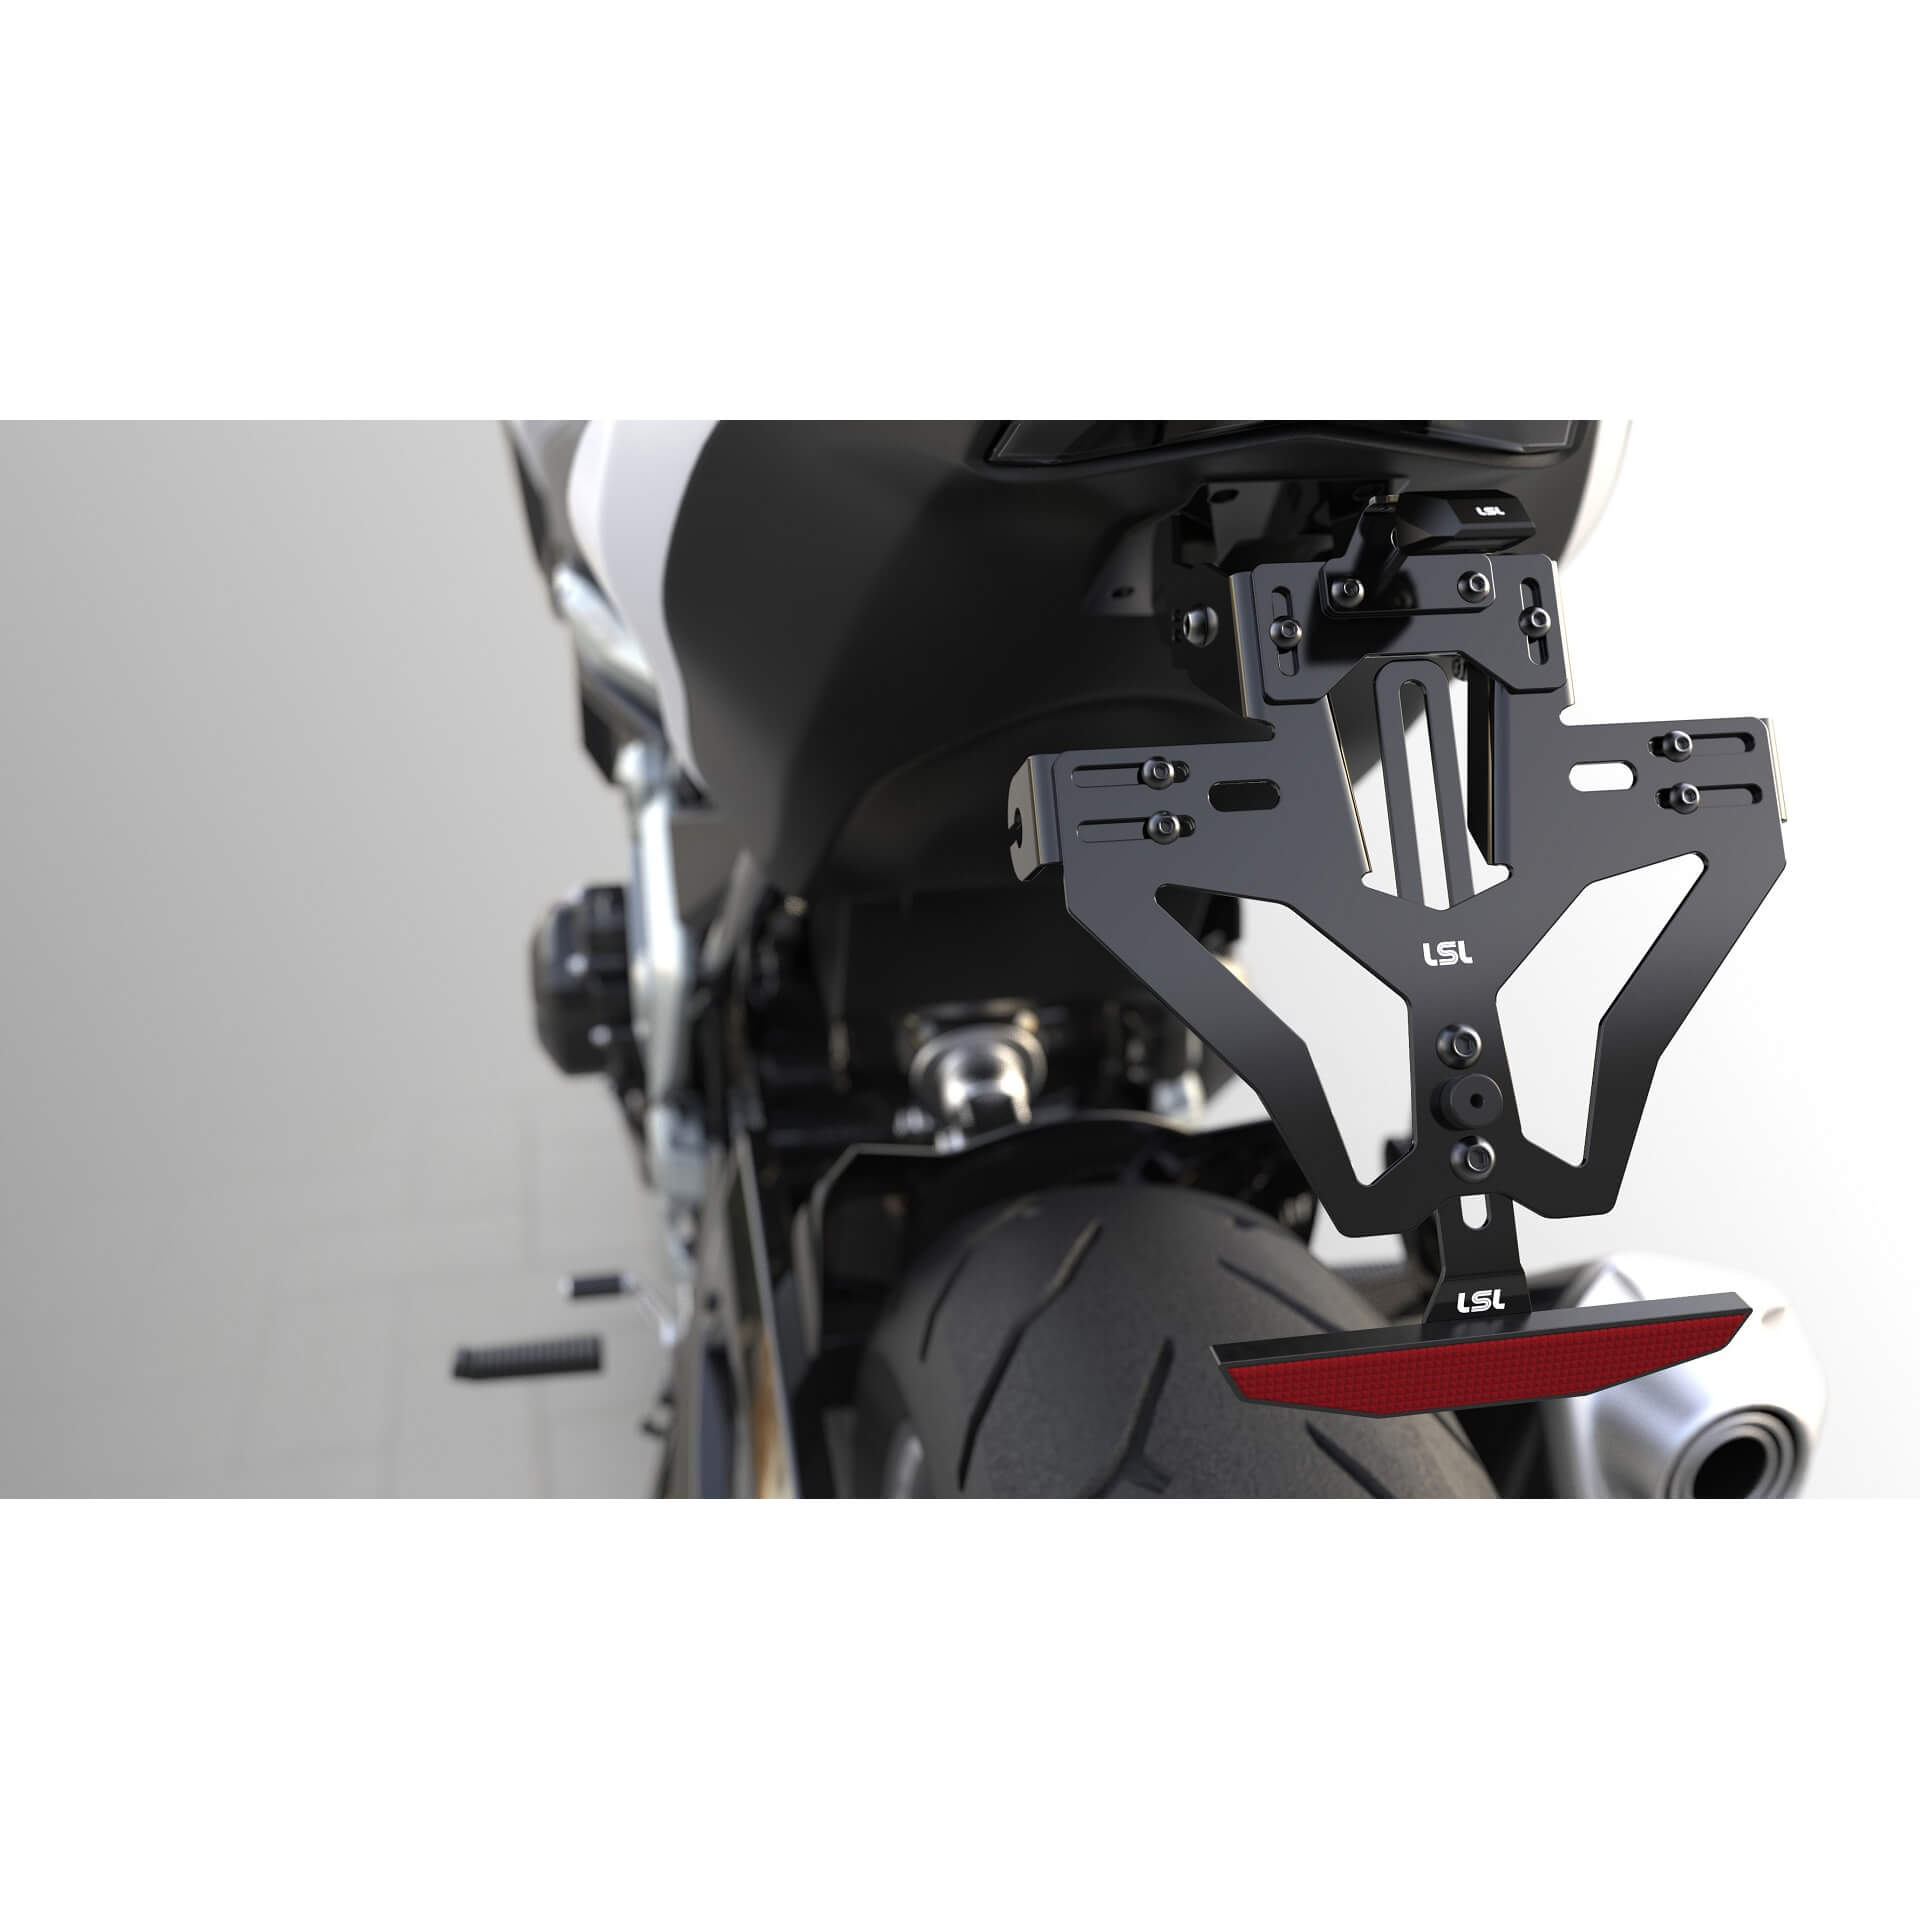 lsl MANTIS-RS PRO für Honda CBR 1000 RR Fireblade SP / SP2, inkl. Kennzeichenbeleuchtung